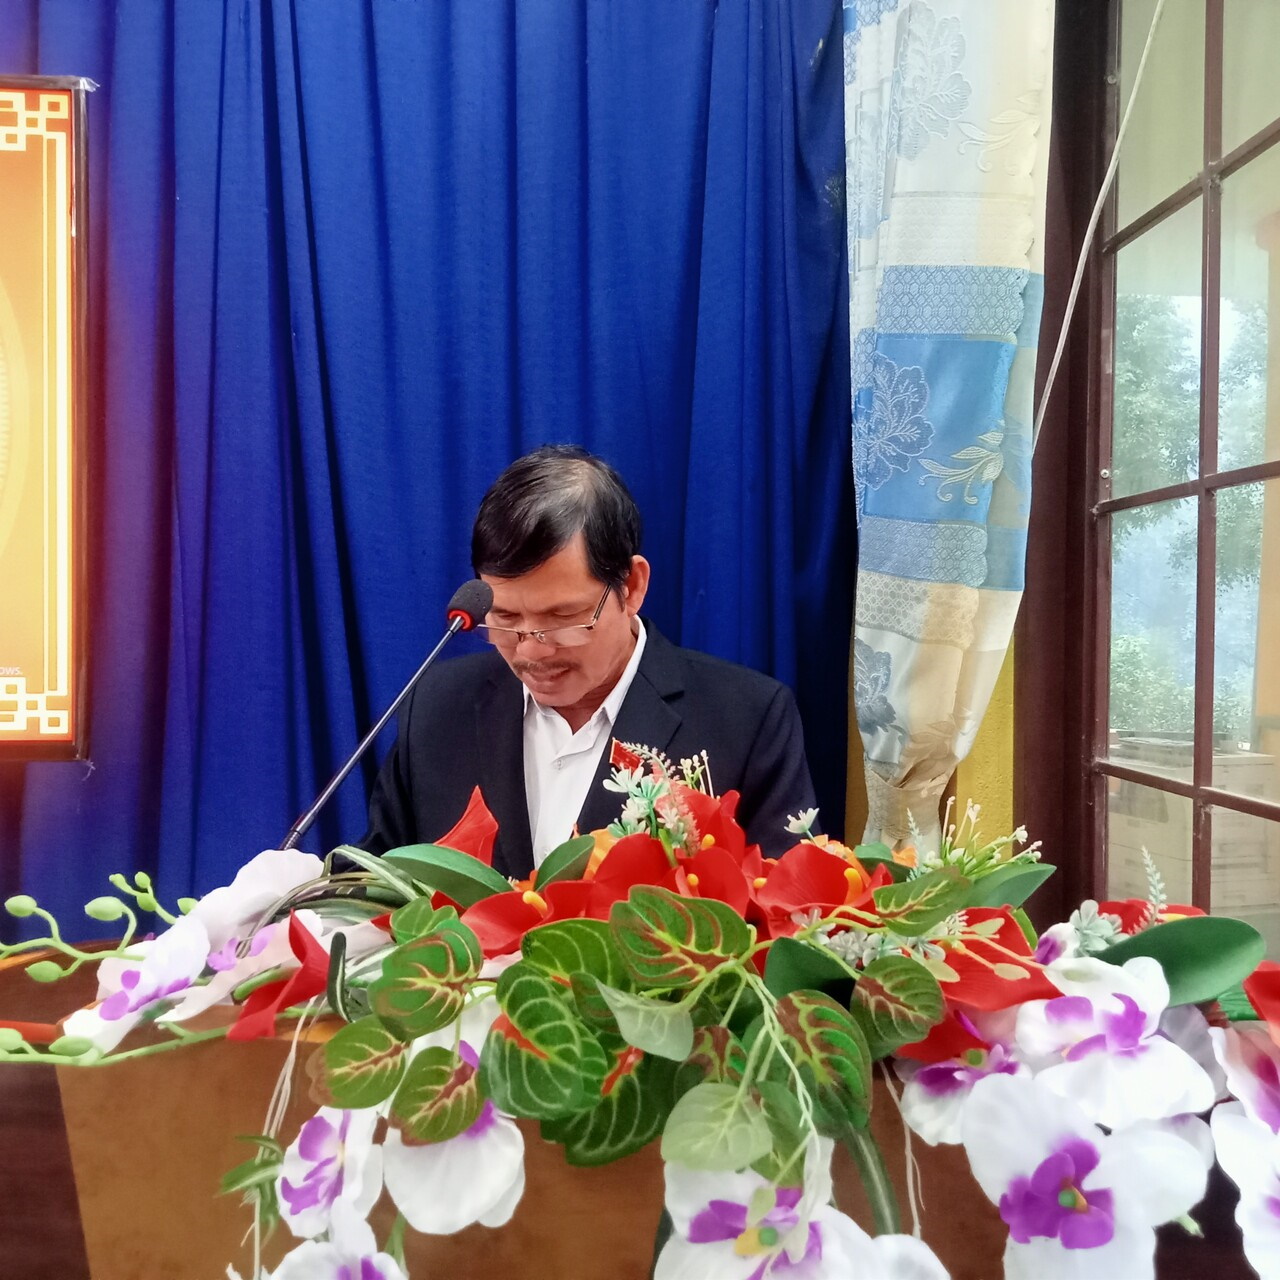 Ông Hồ Thanh Hùng, Bí thư Đảng ủy - Chủ tịch HĐND xã phát biếu khai mạc kỳ họp thứ 11 HĐND xã